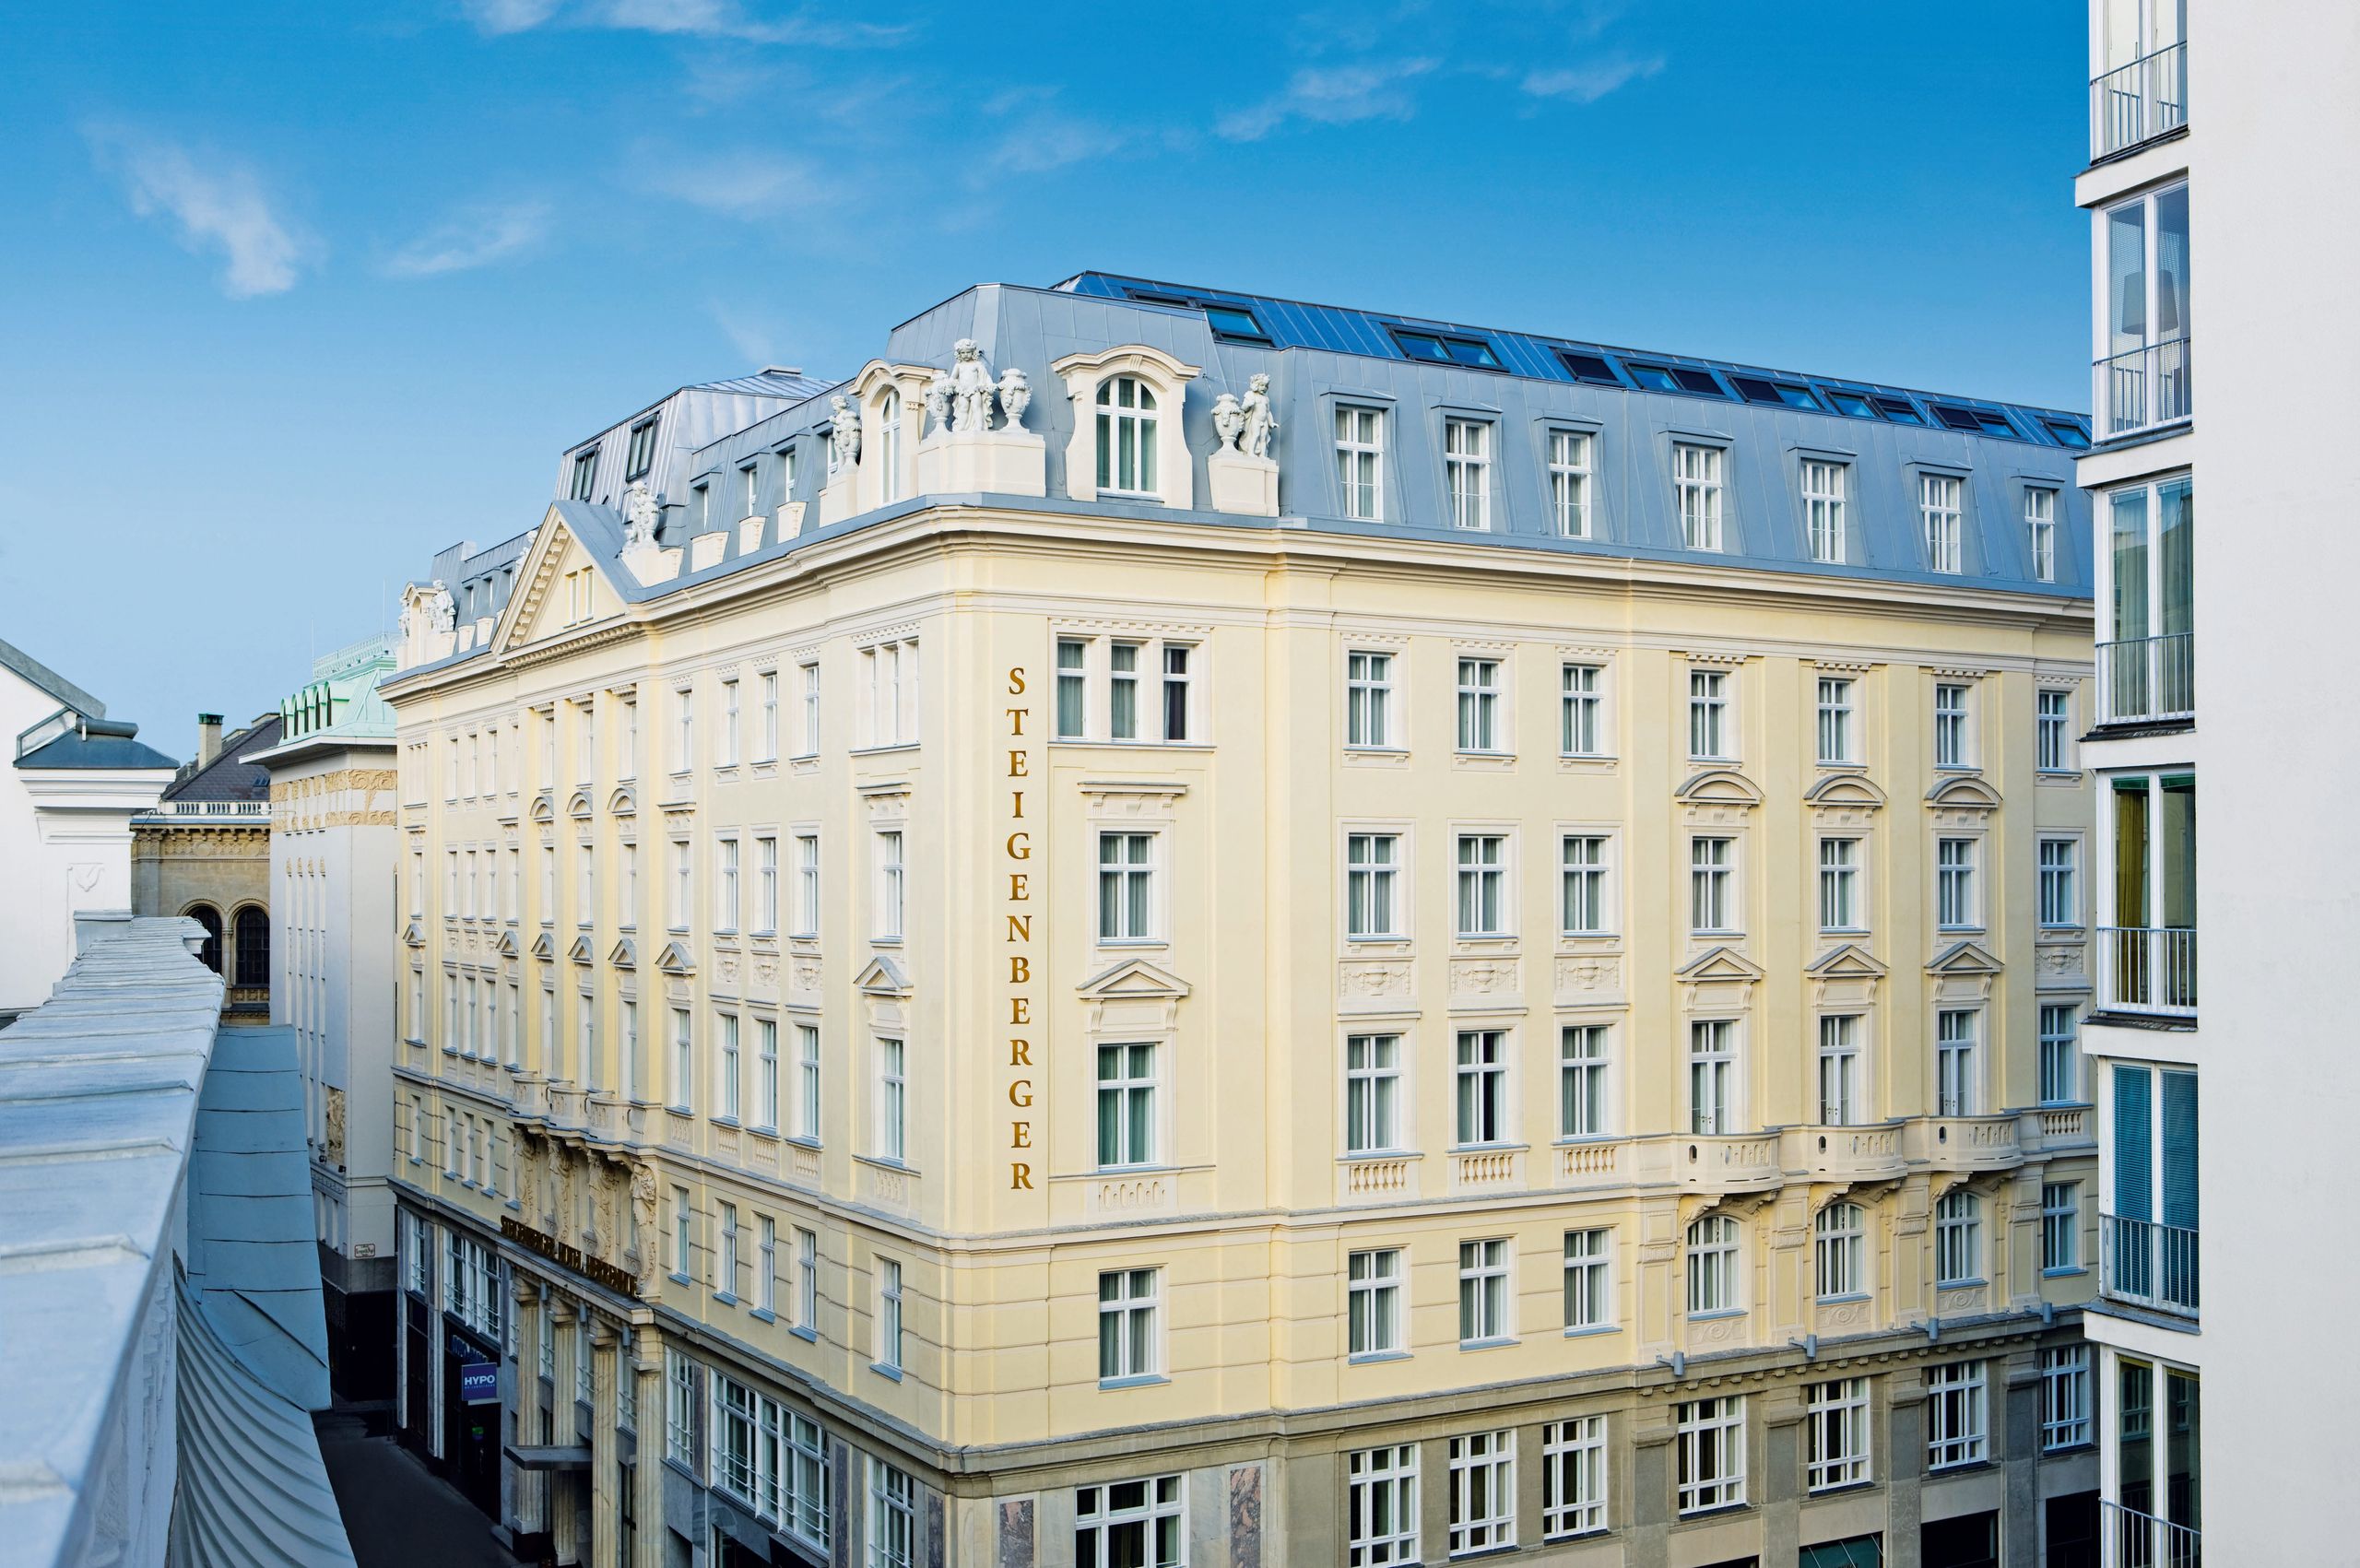 Steigenberger Hotel Herrenhof, Vienna